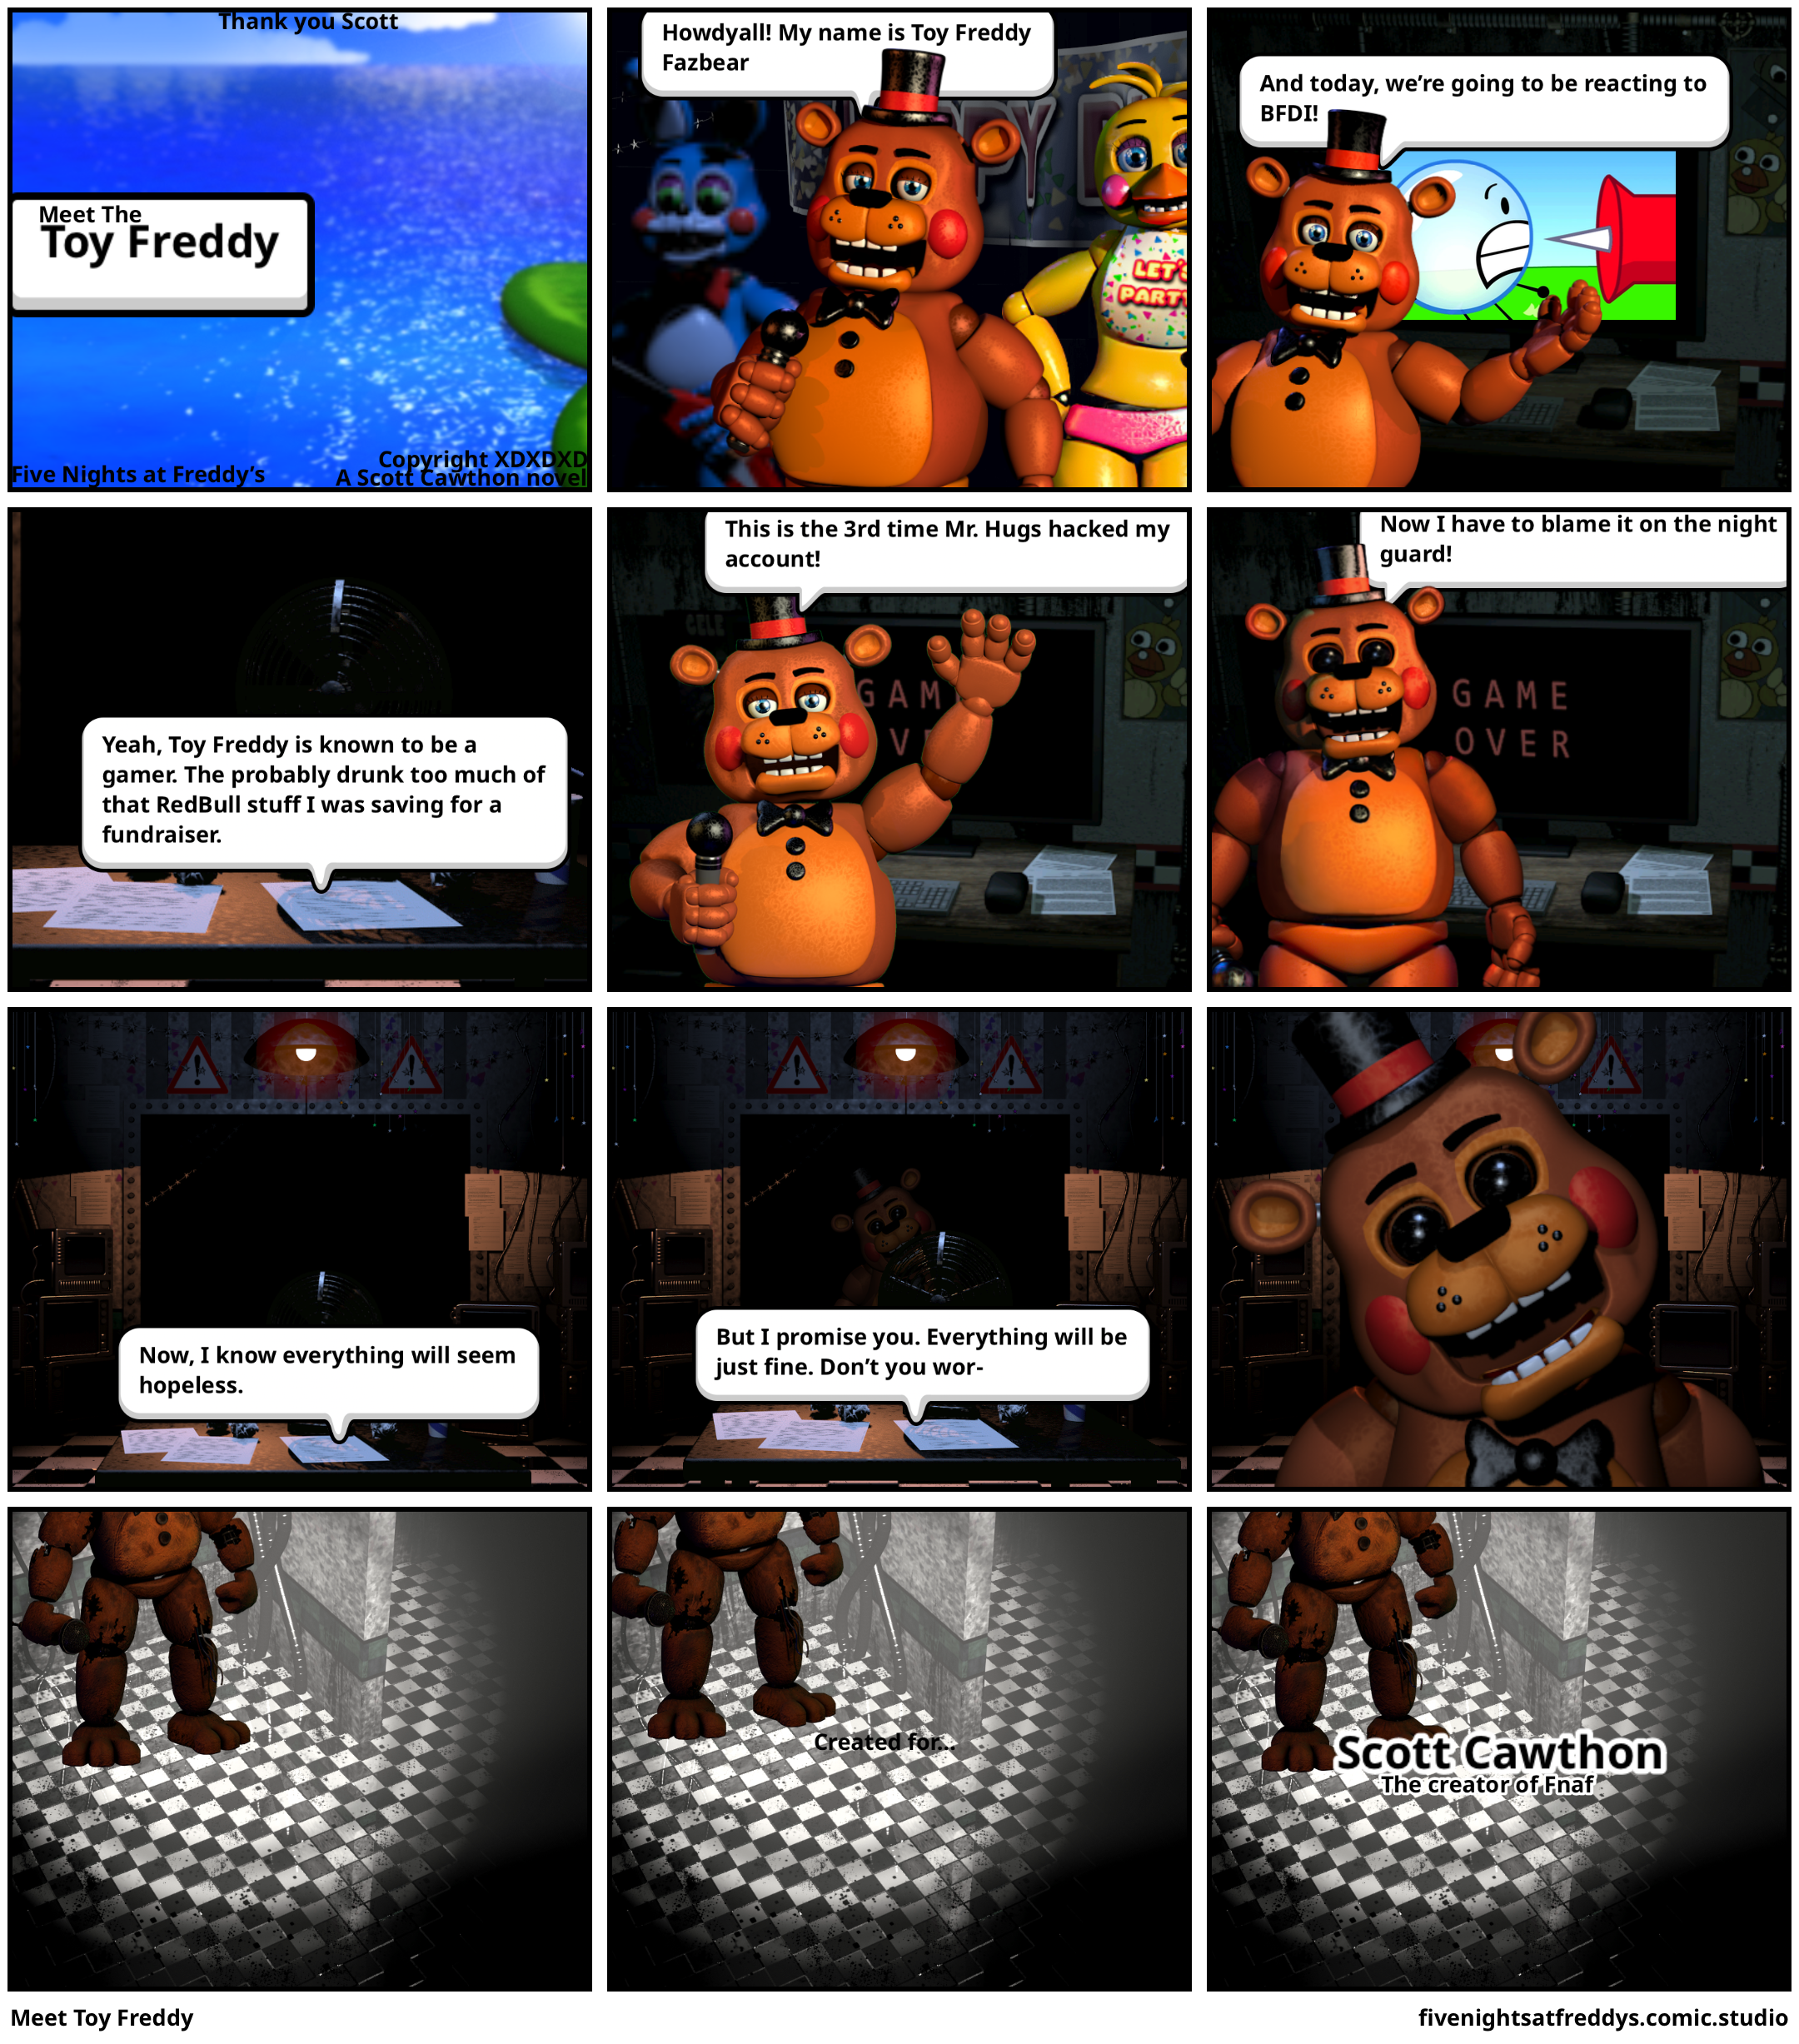 Meet Toy Freddy